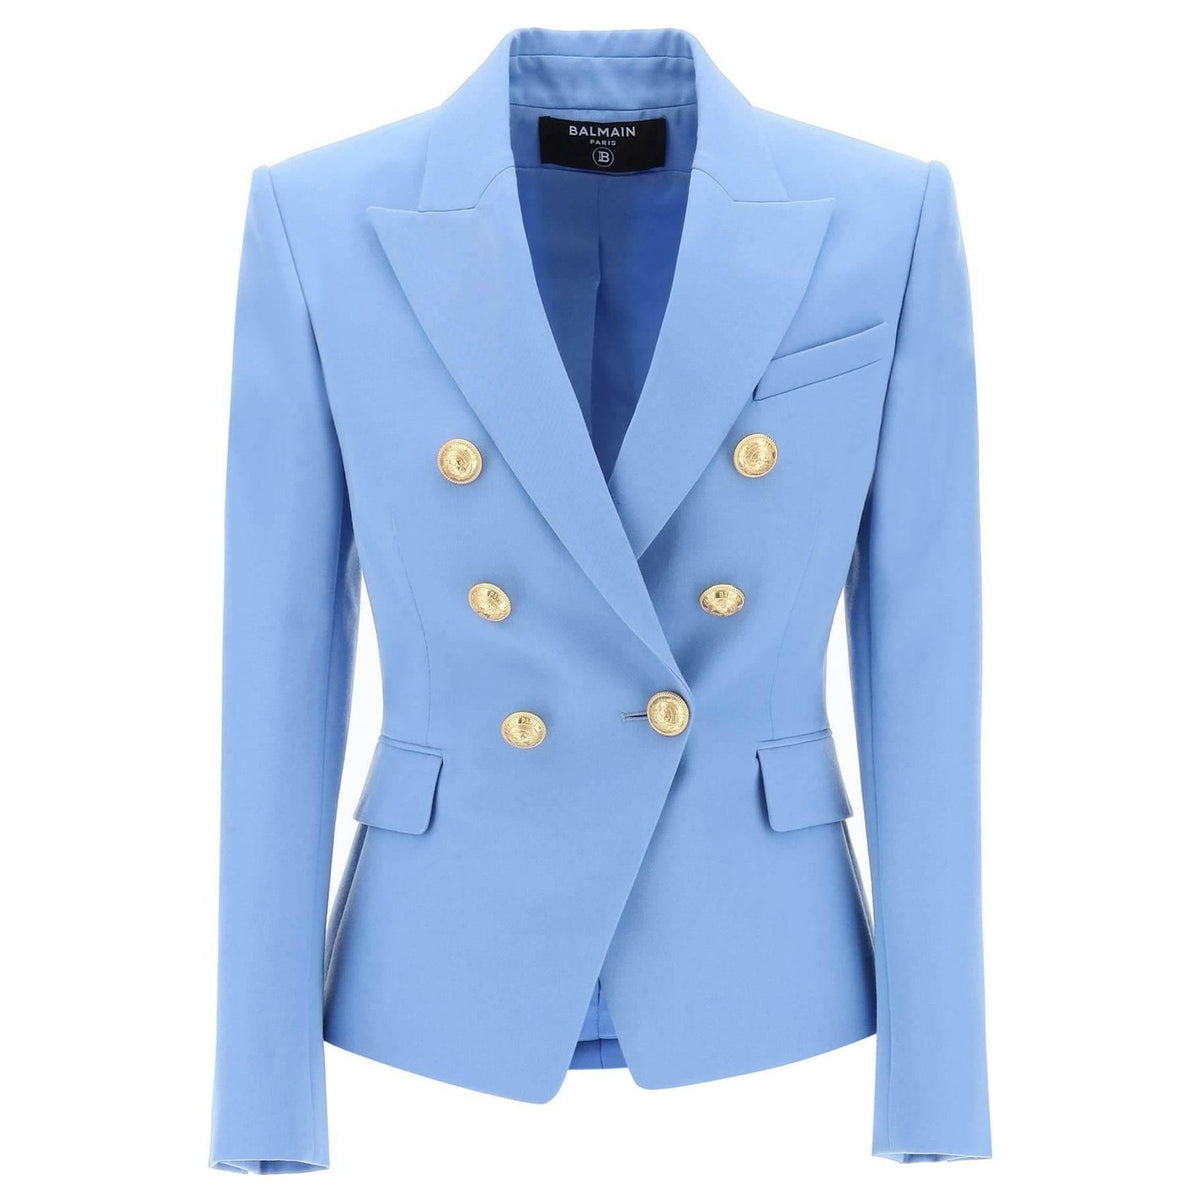 BALMAIN - Fitted Sky Blue Double-Breasted Wool Grain de Poudre Jacket - JOHN JULIA